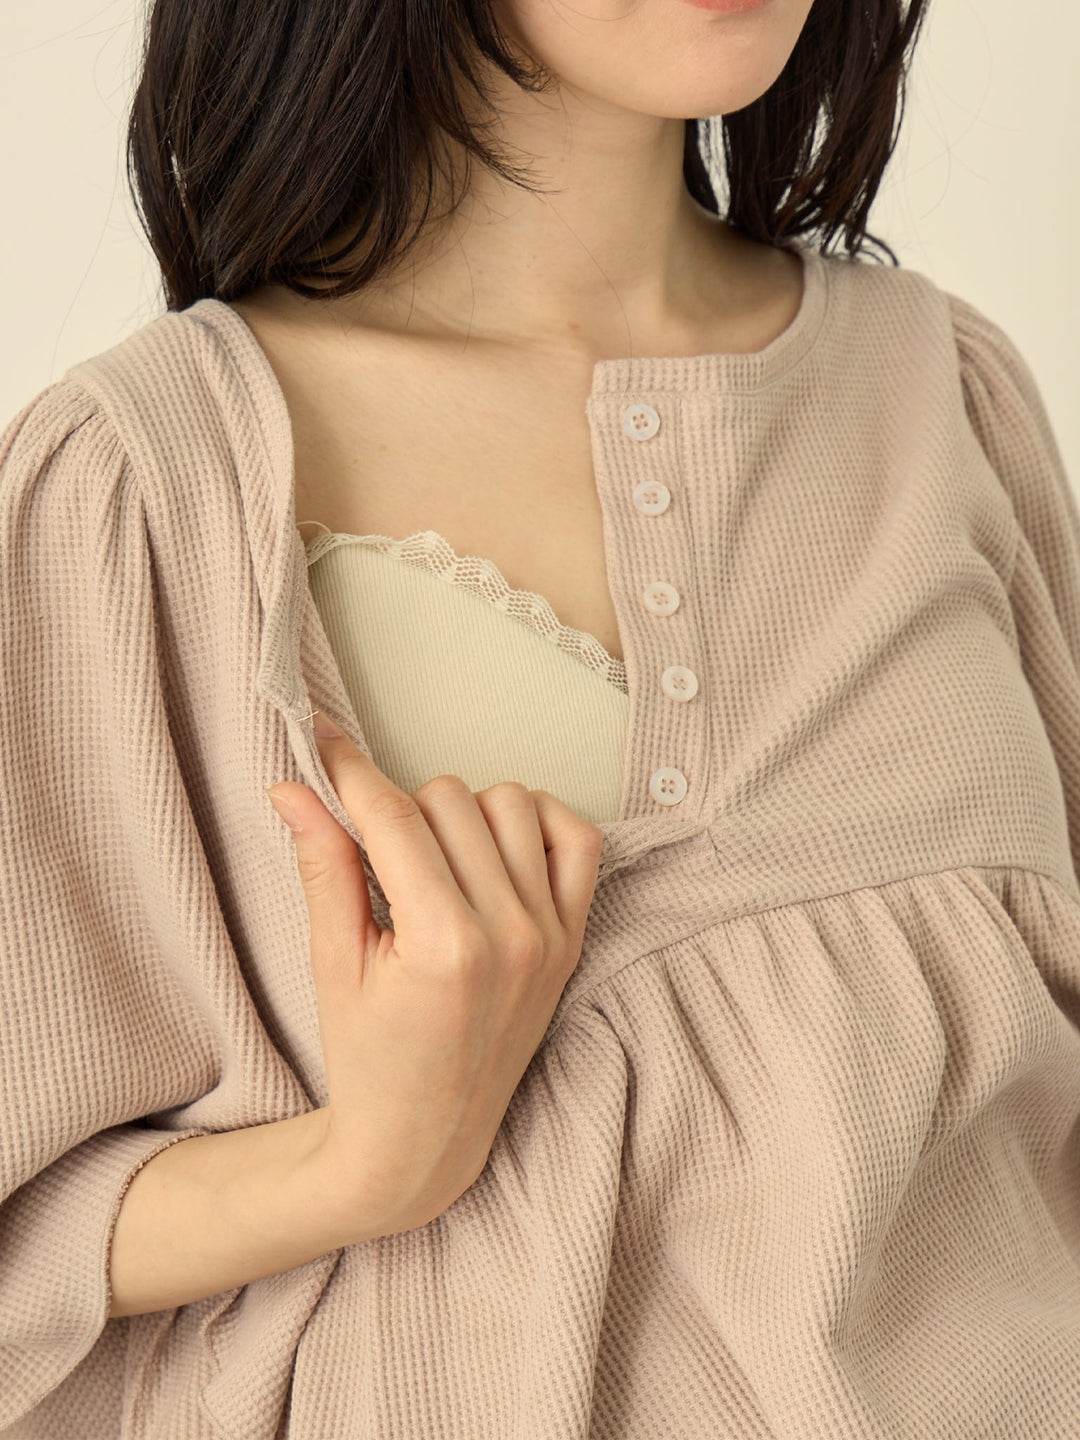 【マタニティ・授乳服】はらまき付きワッフルパジャマセット Pink beige